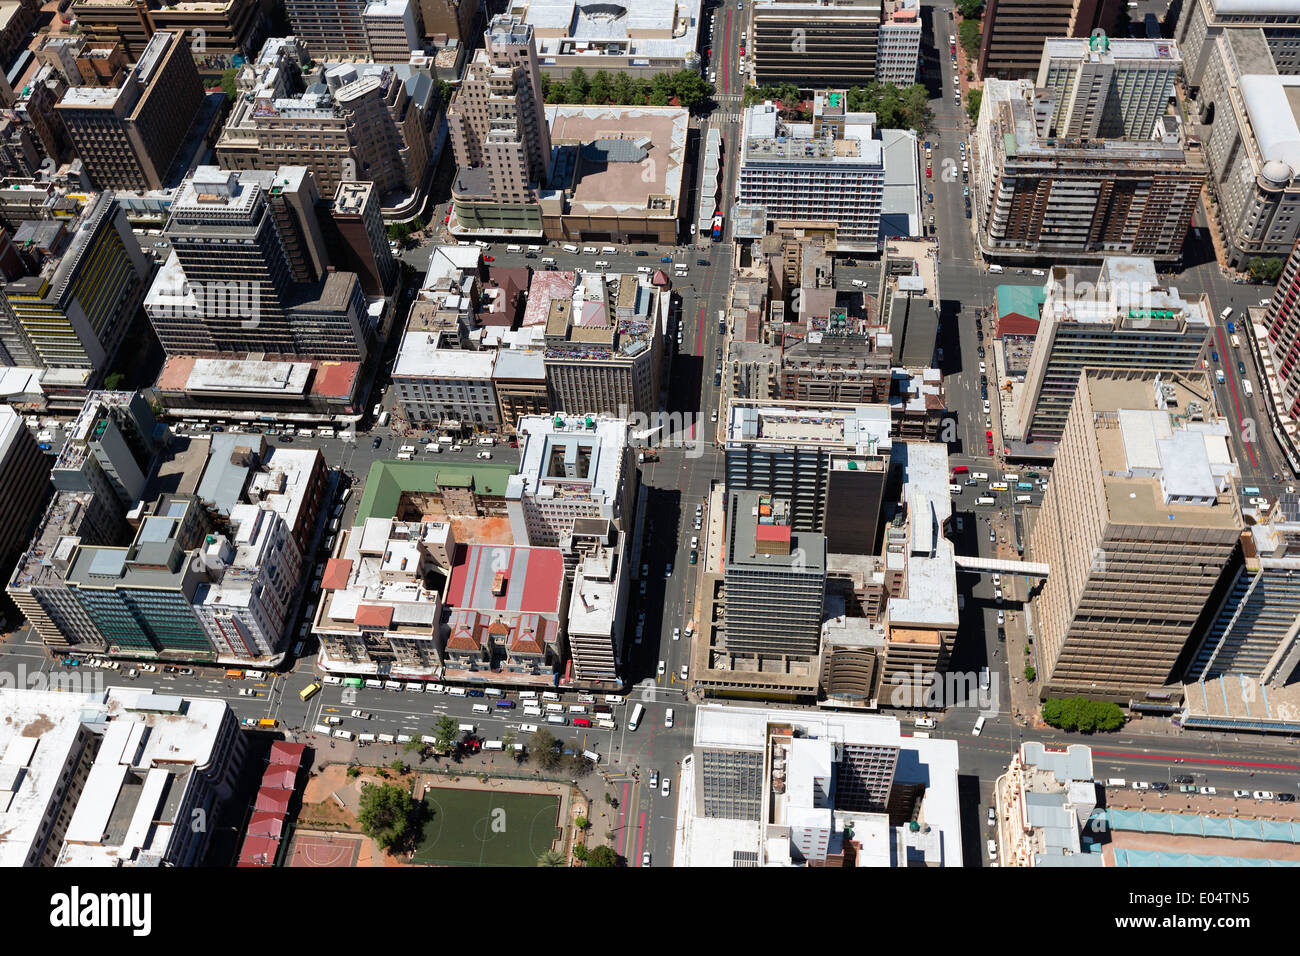 Vista aérea del distrito central de negocios de Johannesburgo y sus numerosos edificios gigantescos.Johannesburgo.Sudáfrica Foto de stock